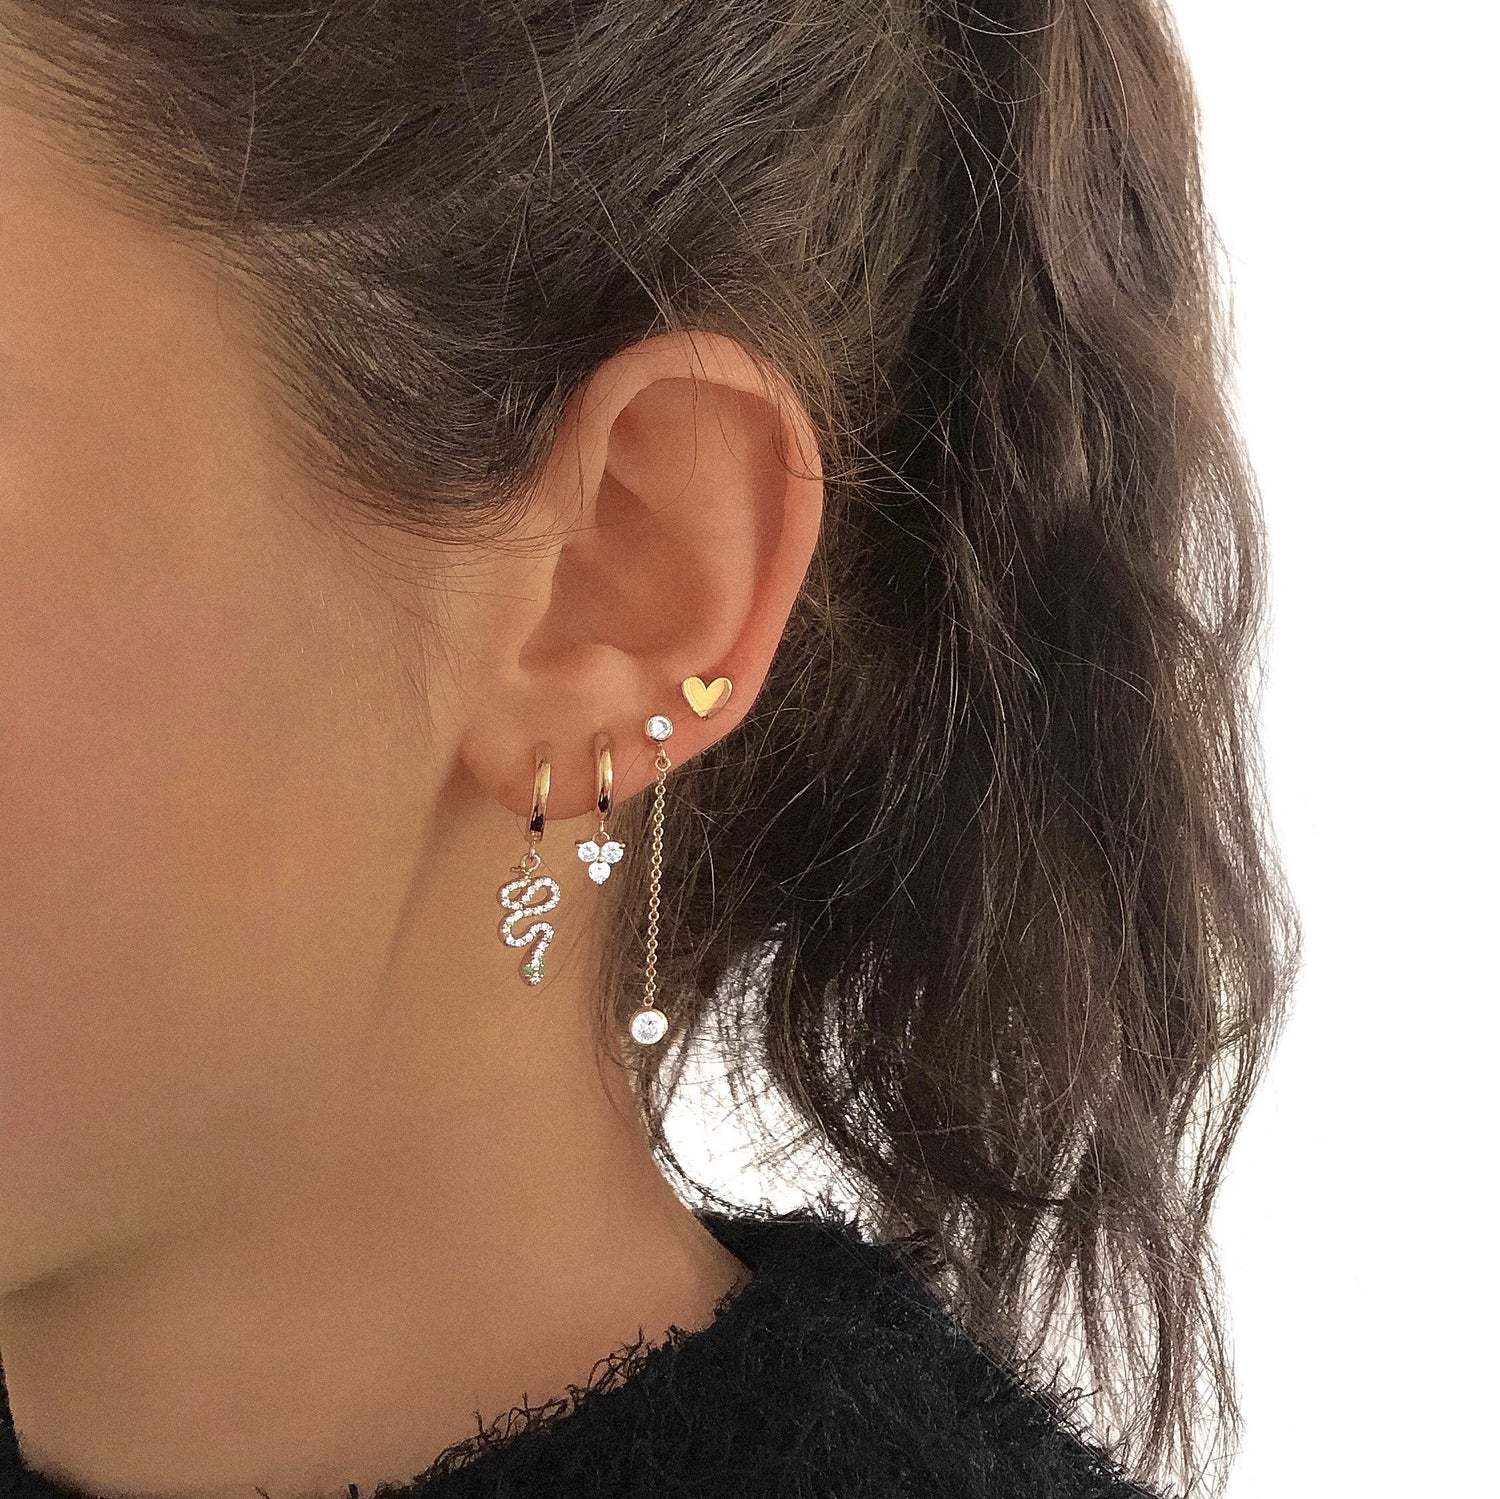 J&CO Jewellery Little Bezel Drop Earrings Gold